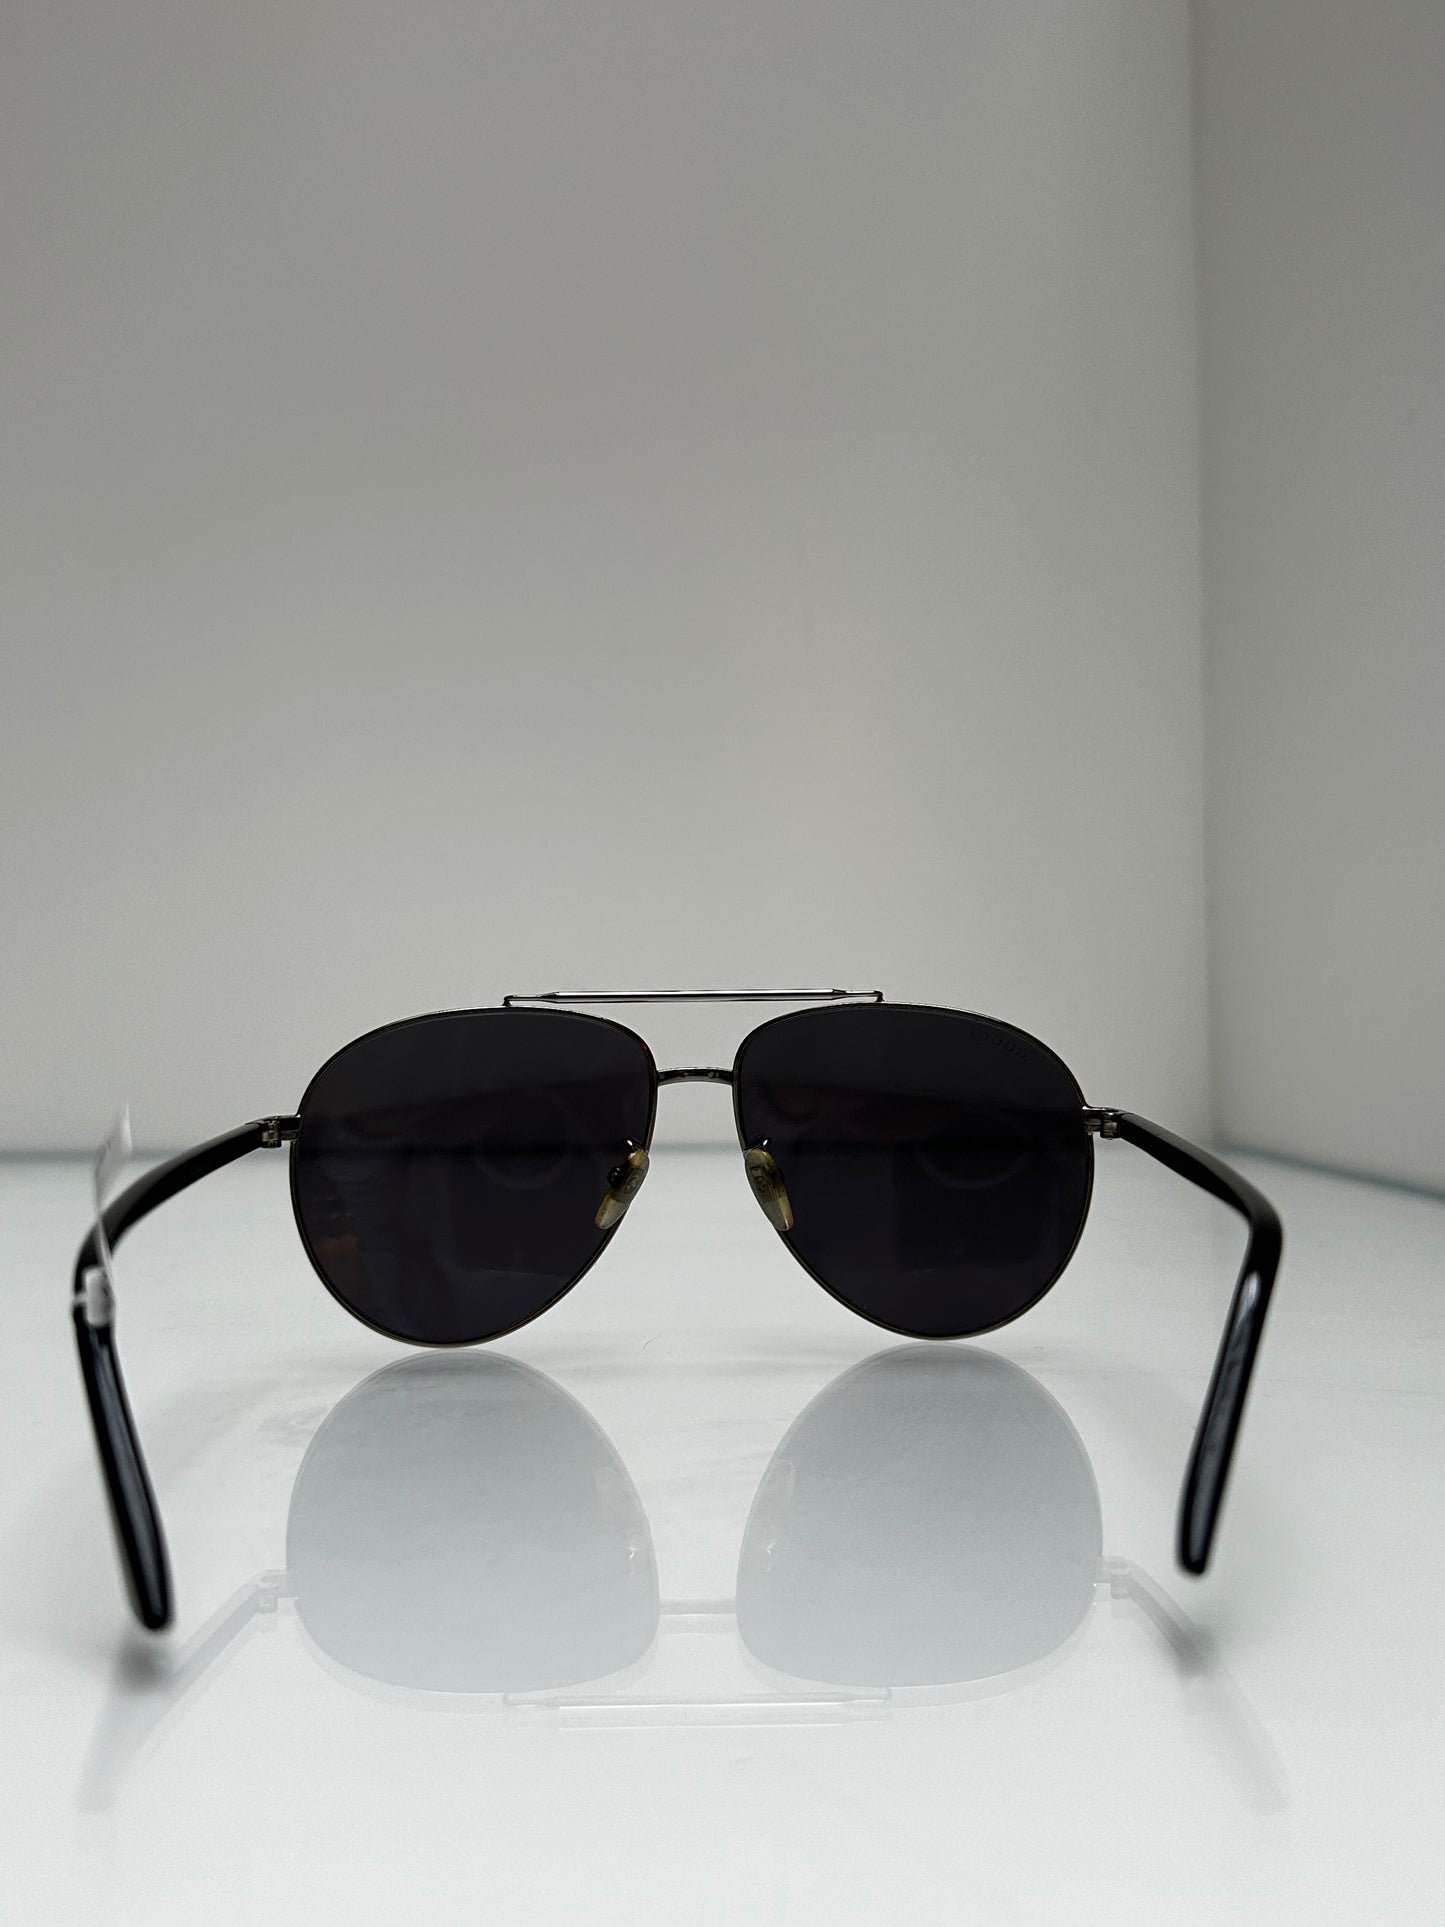 Gucci Silver & Black Aviator Sunglasses